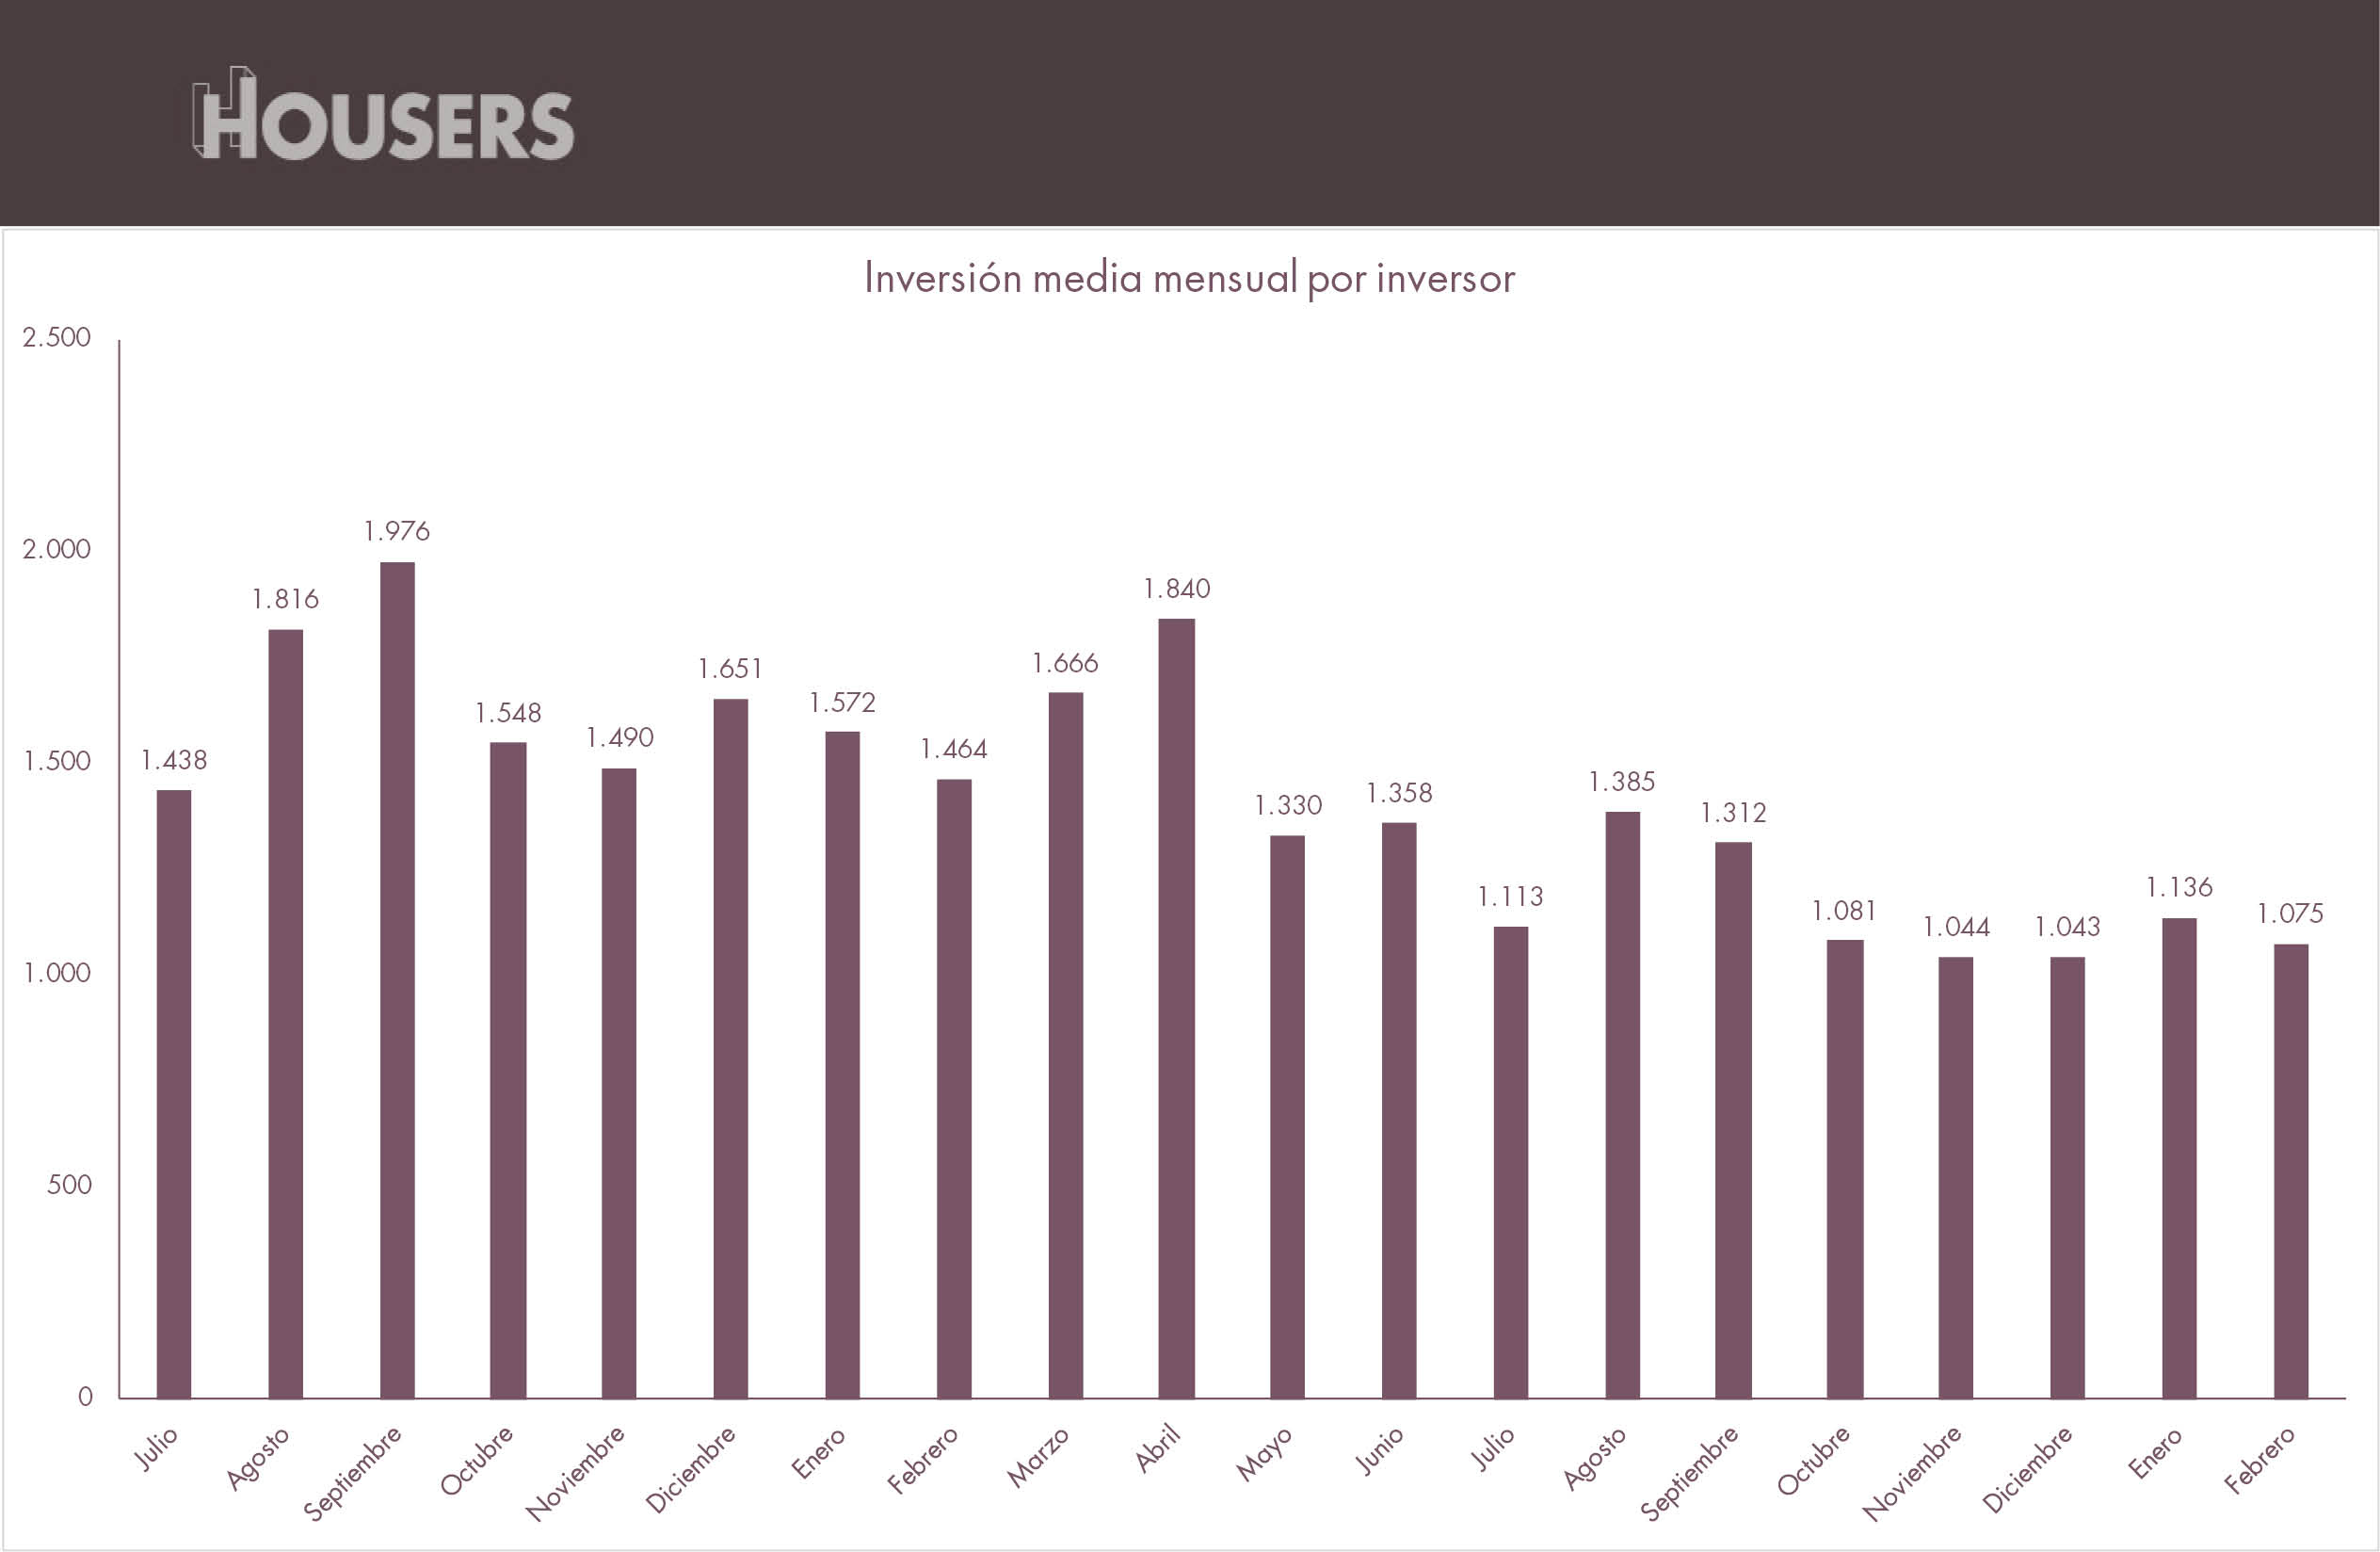 Estadística Housers febrero 2017 inversion media mensual por inversor